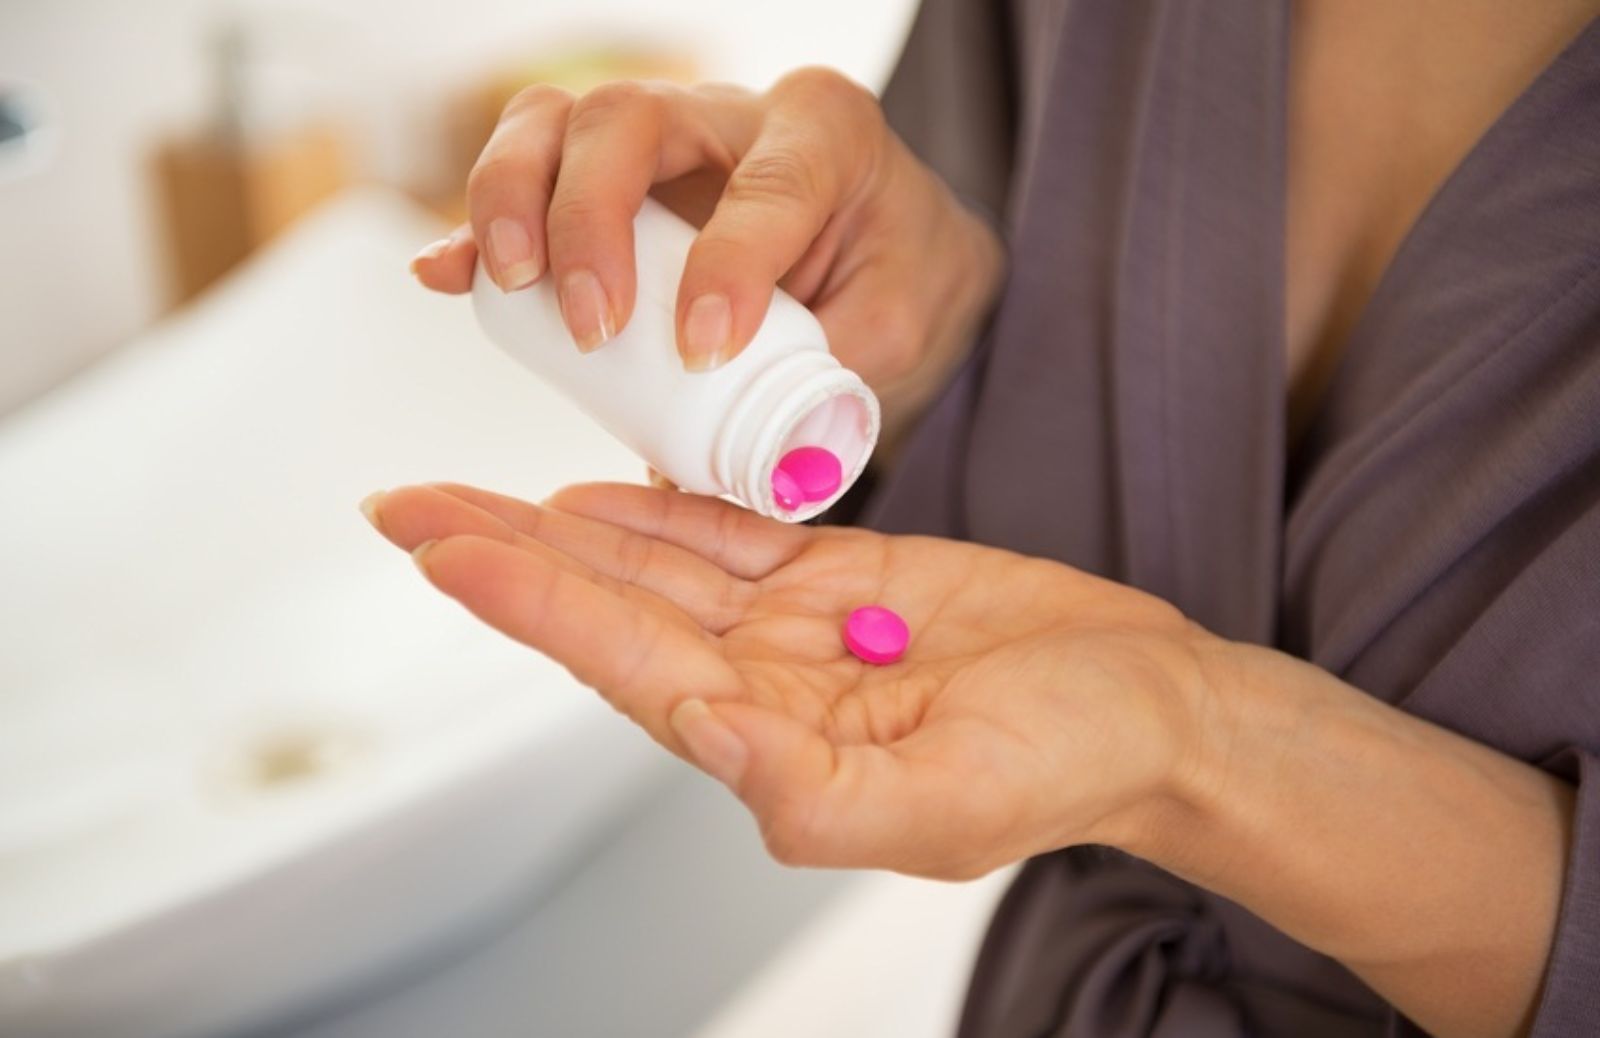 La pillola può rendere meno fertili?